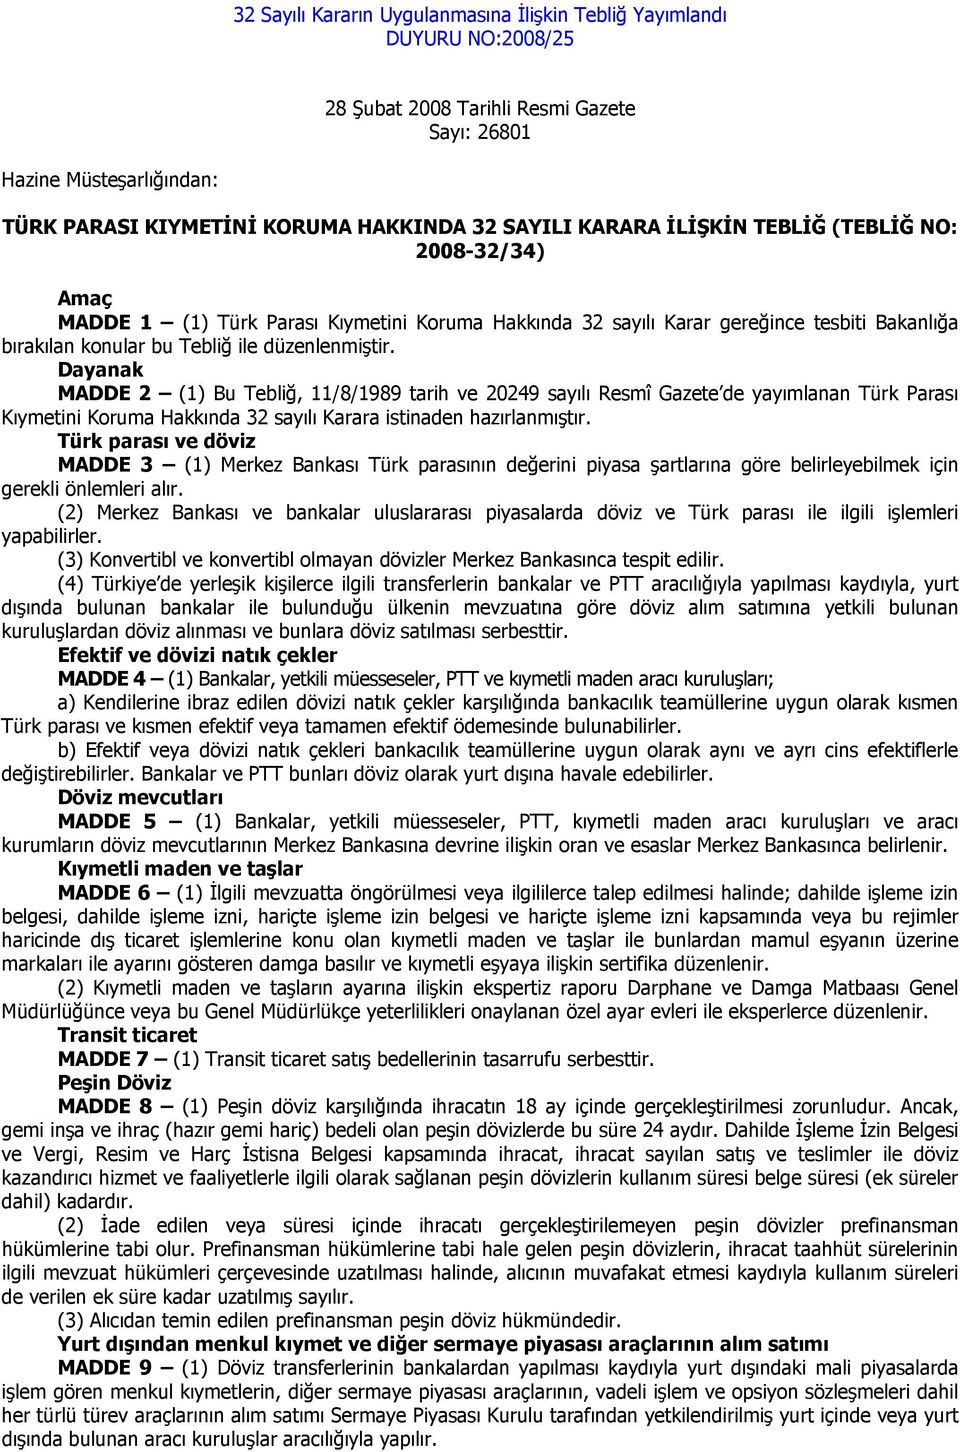 Dayanak MADDE 2 (1) Bu Tebliğ, 11/8/1989 tarih ve 20249 sayılı Resmî Gazete de yayımlanan Türk Parası Kıymetini Koruma Hakkında 32 sayılı Karara istinaden hazırlanmıştır.